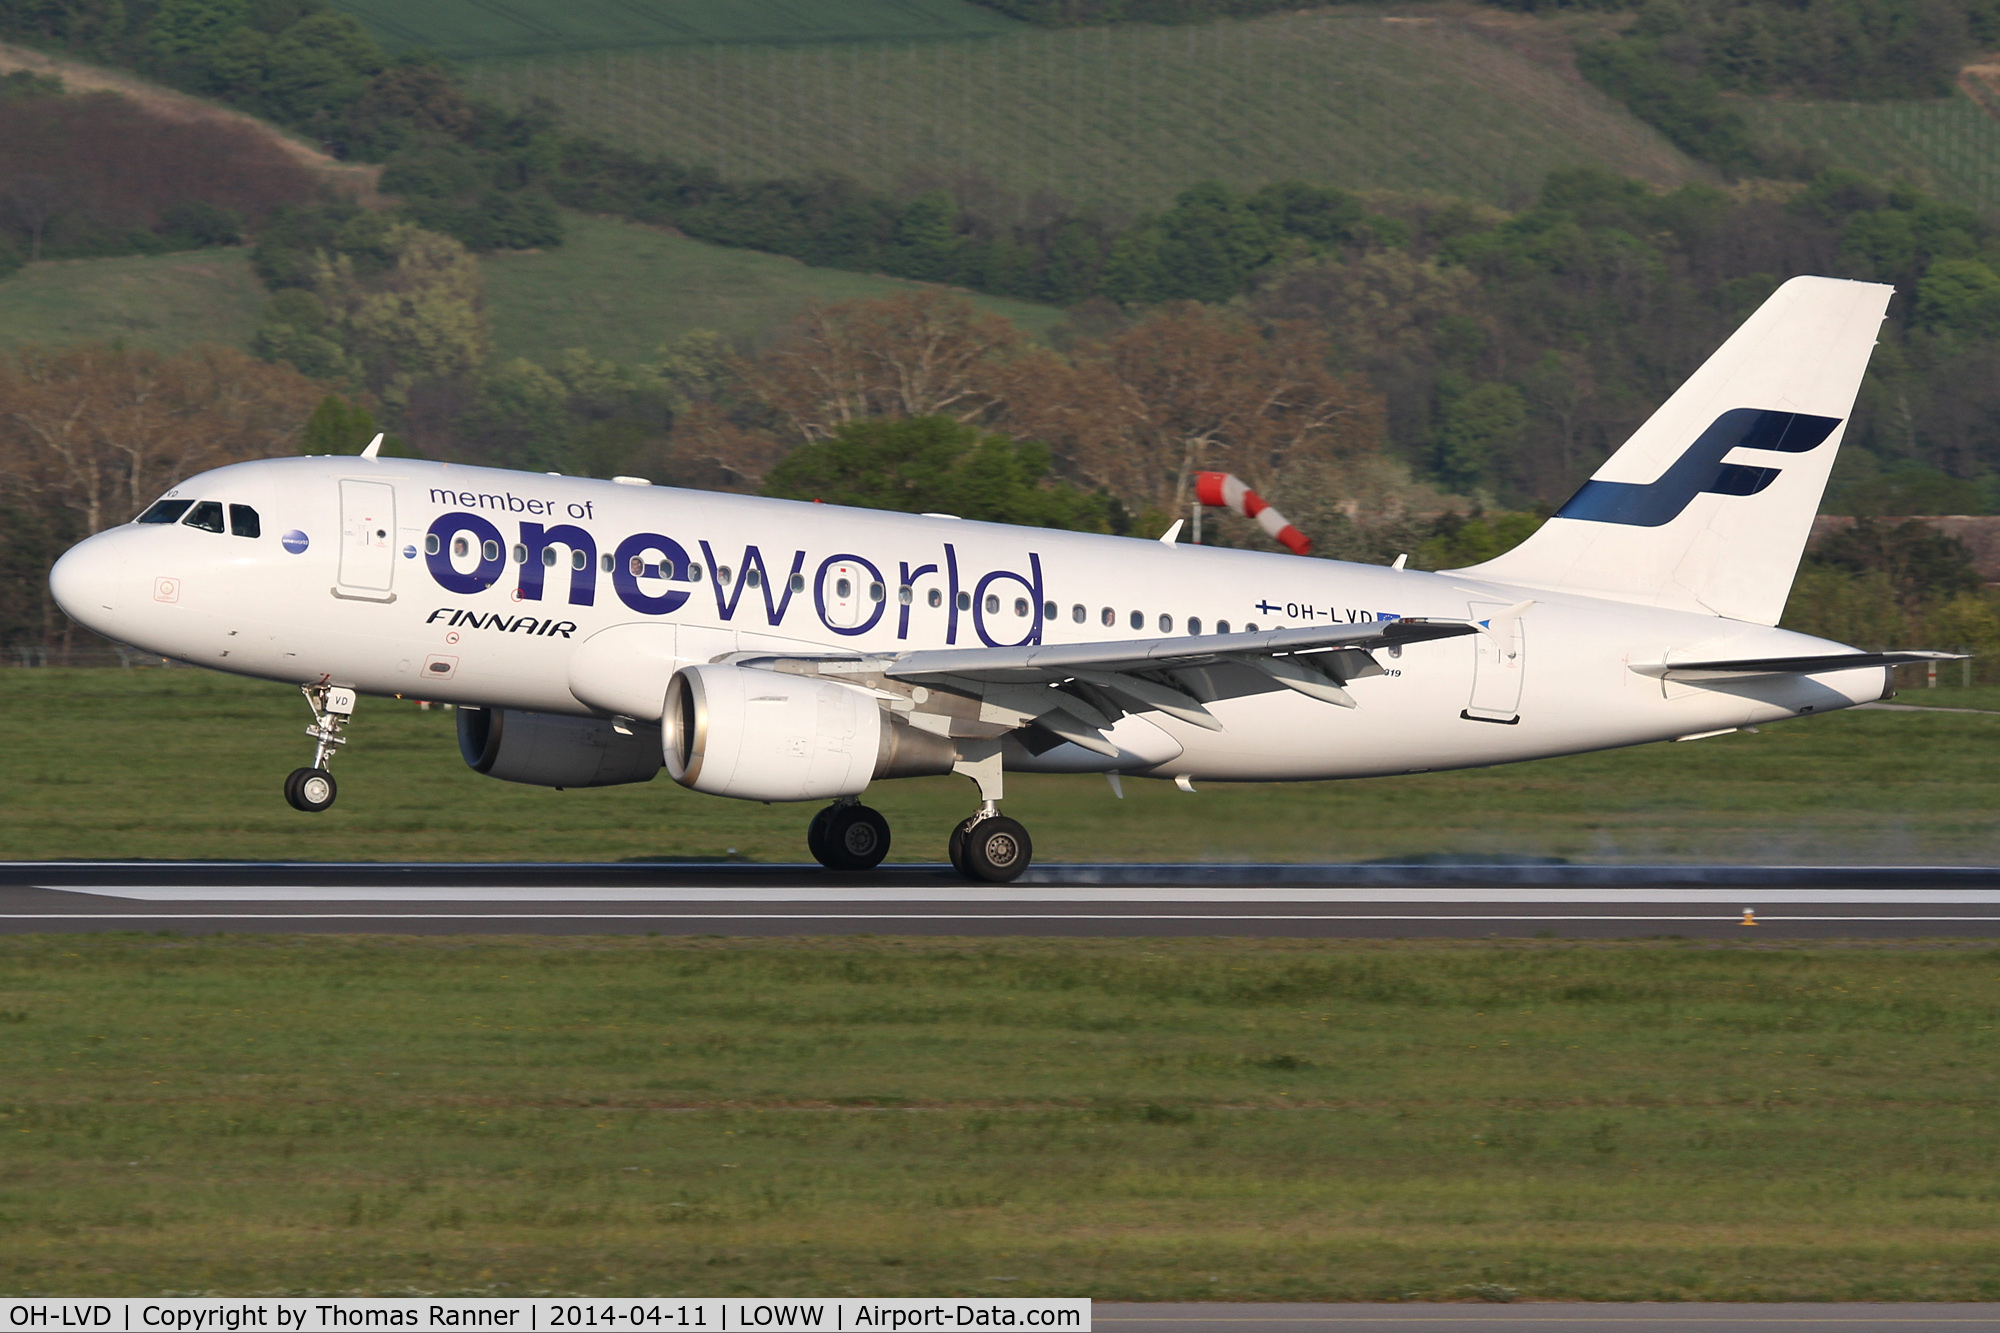 OH-LVD, 2000 Airbus A319-112 C/N 1352, Finnair A319